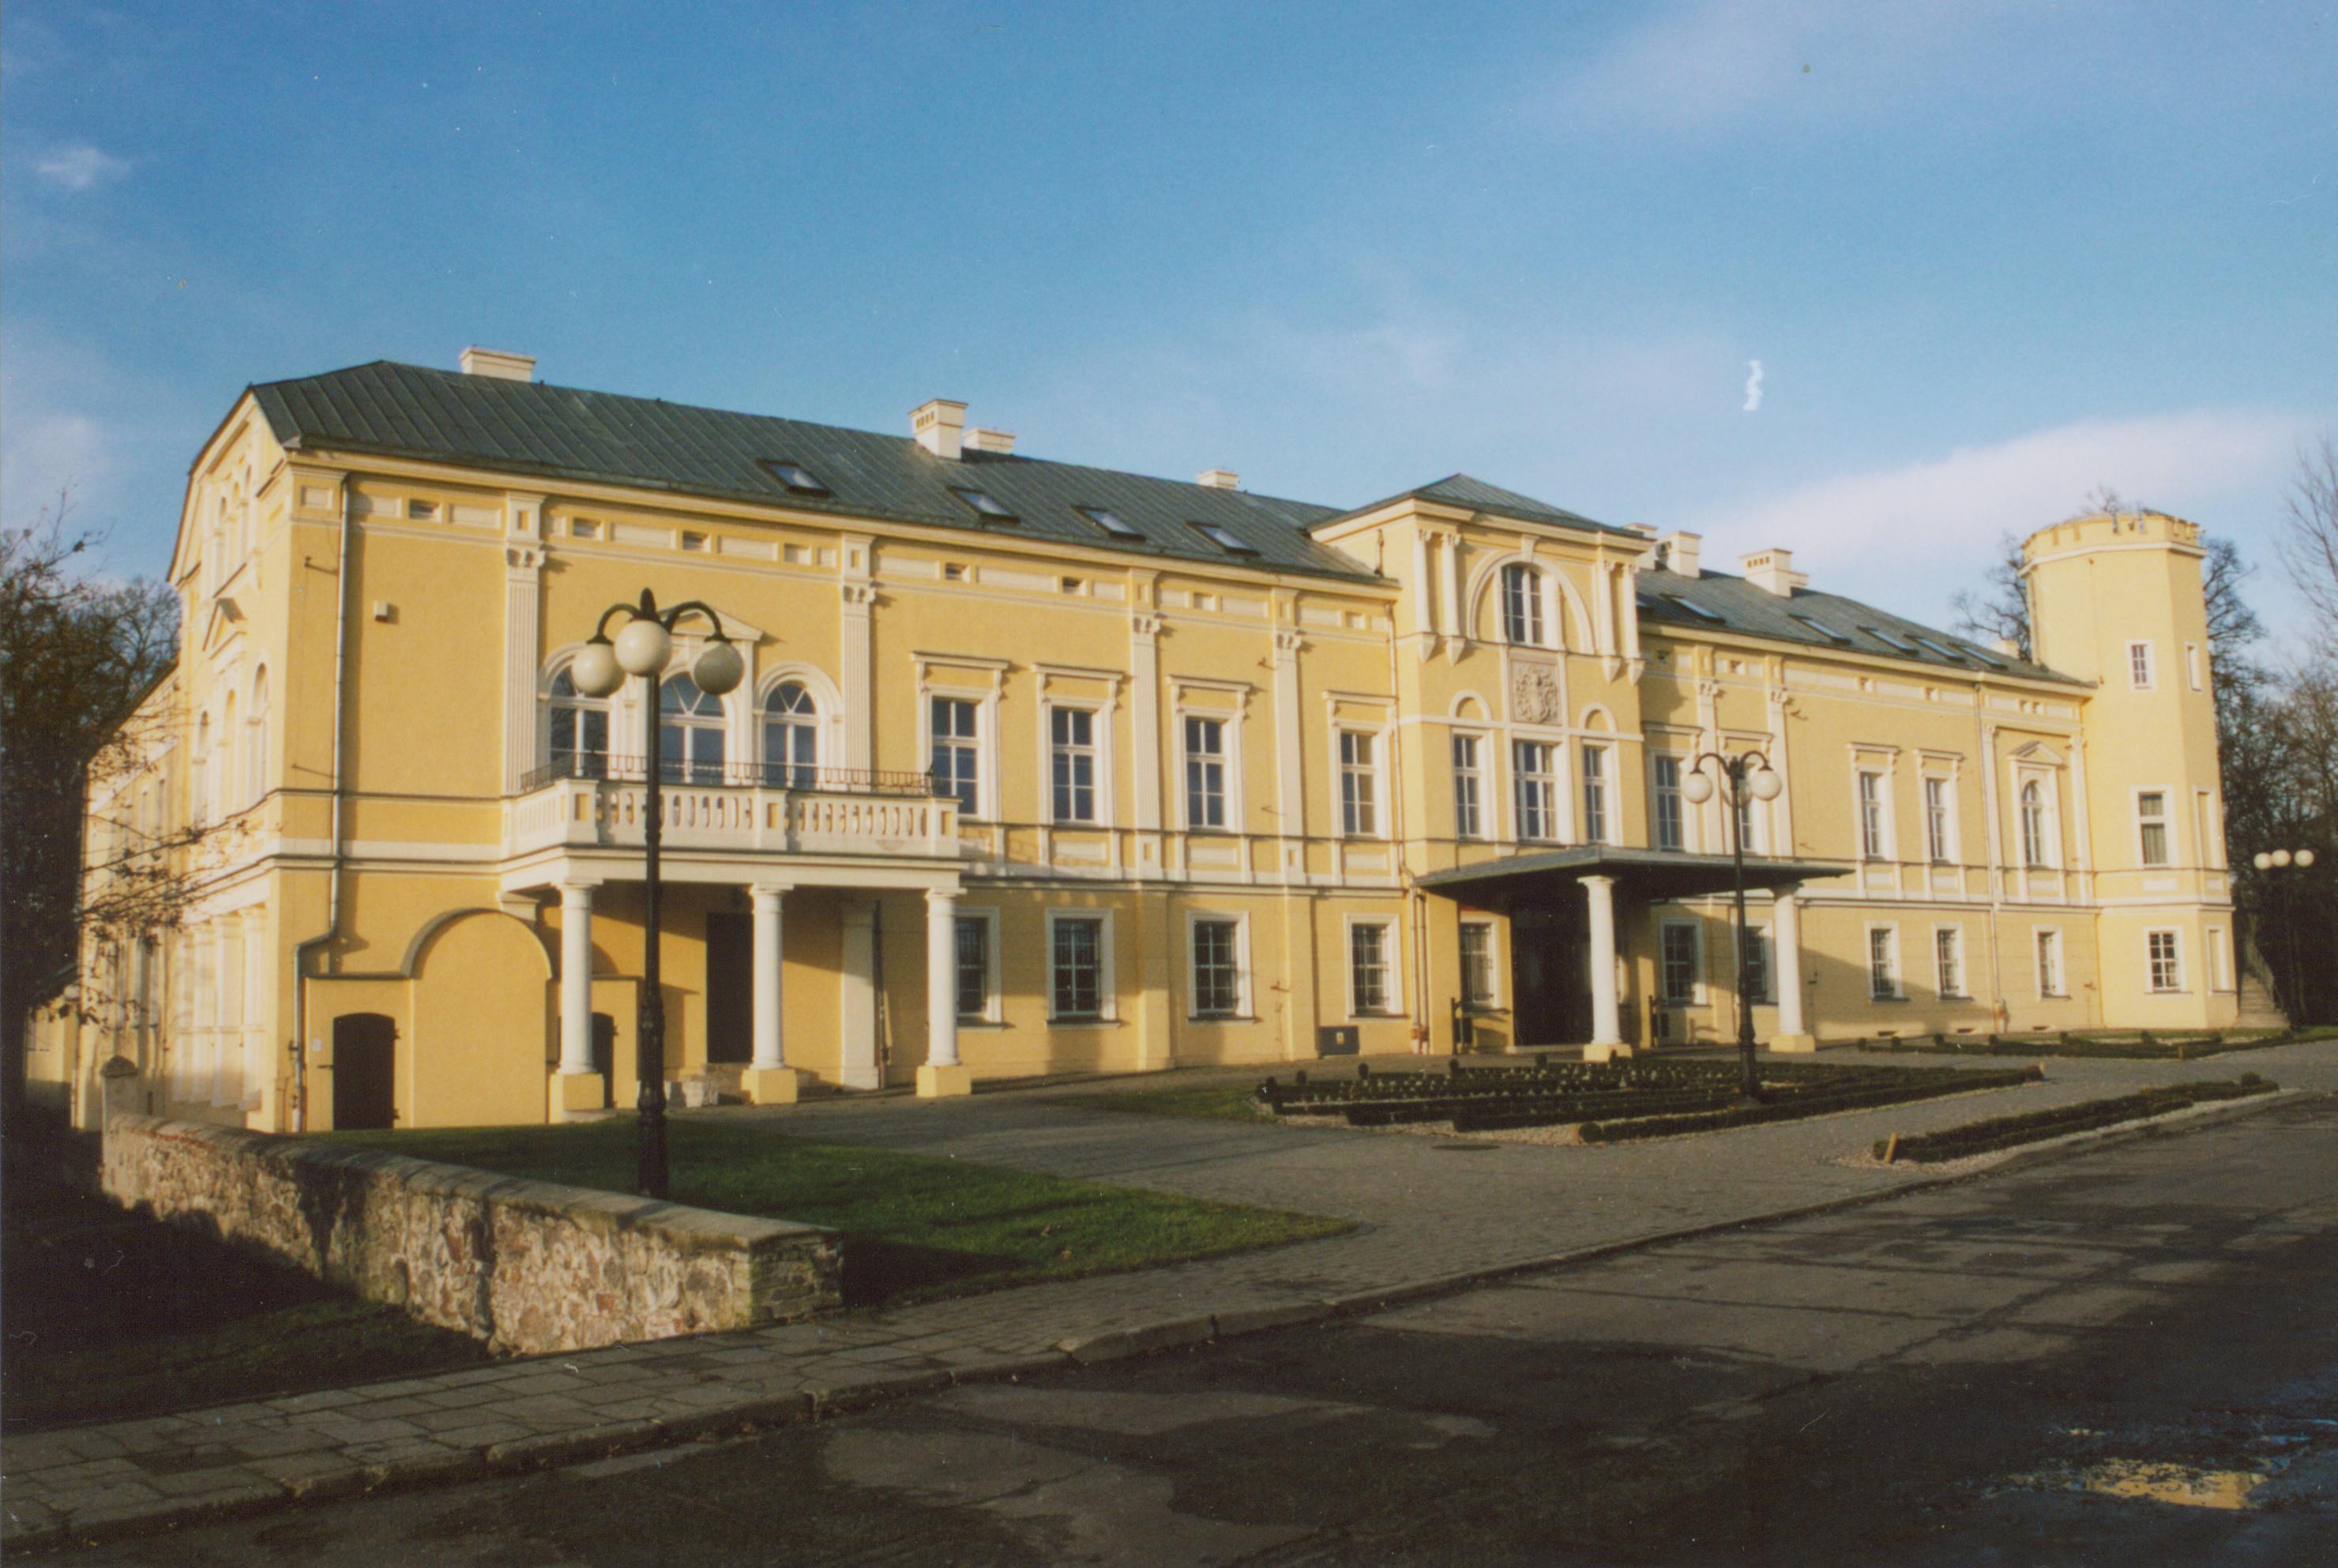 Kalsk- pałac od frontu- wiosna 2007